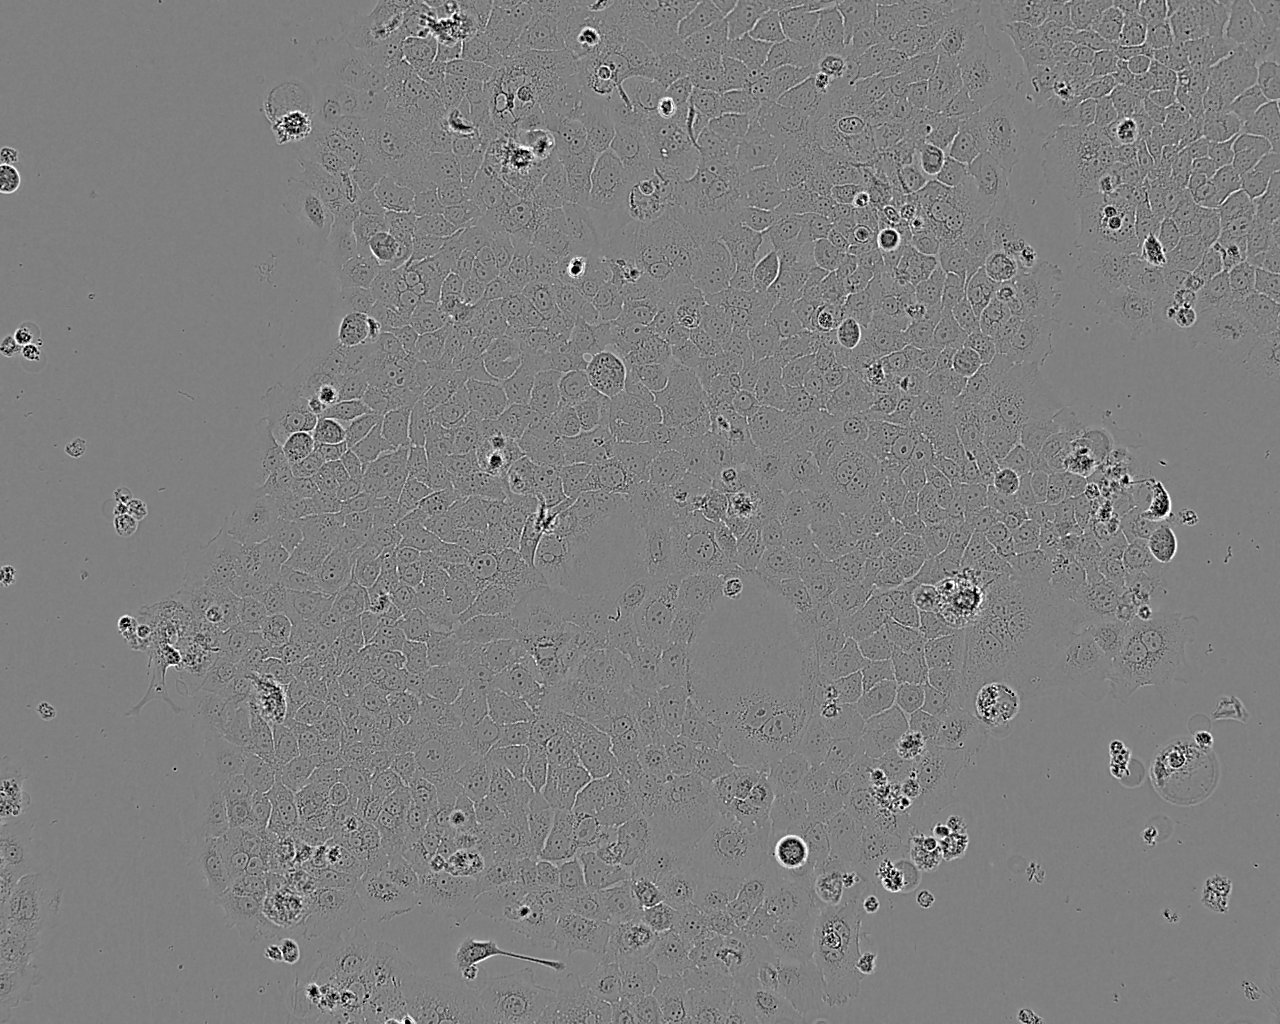 RLE-6TN 大鼠肺泡Ⅱ型细胞系,RLE-6TN